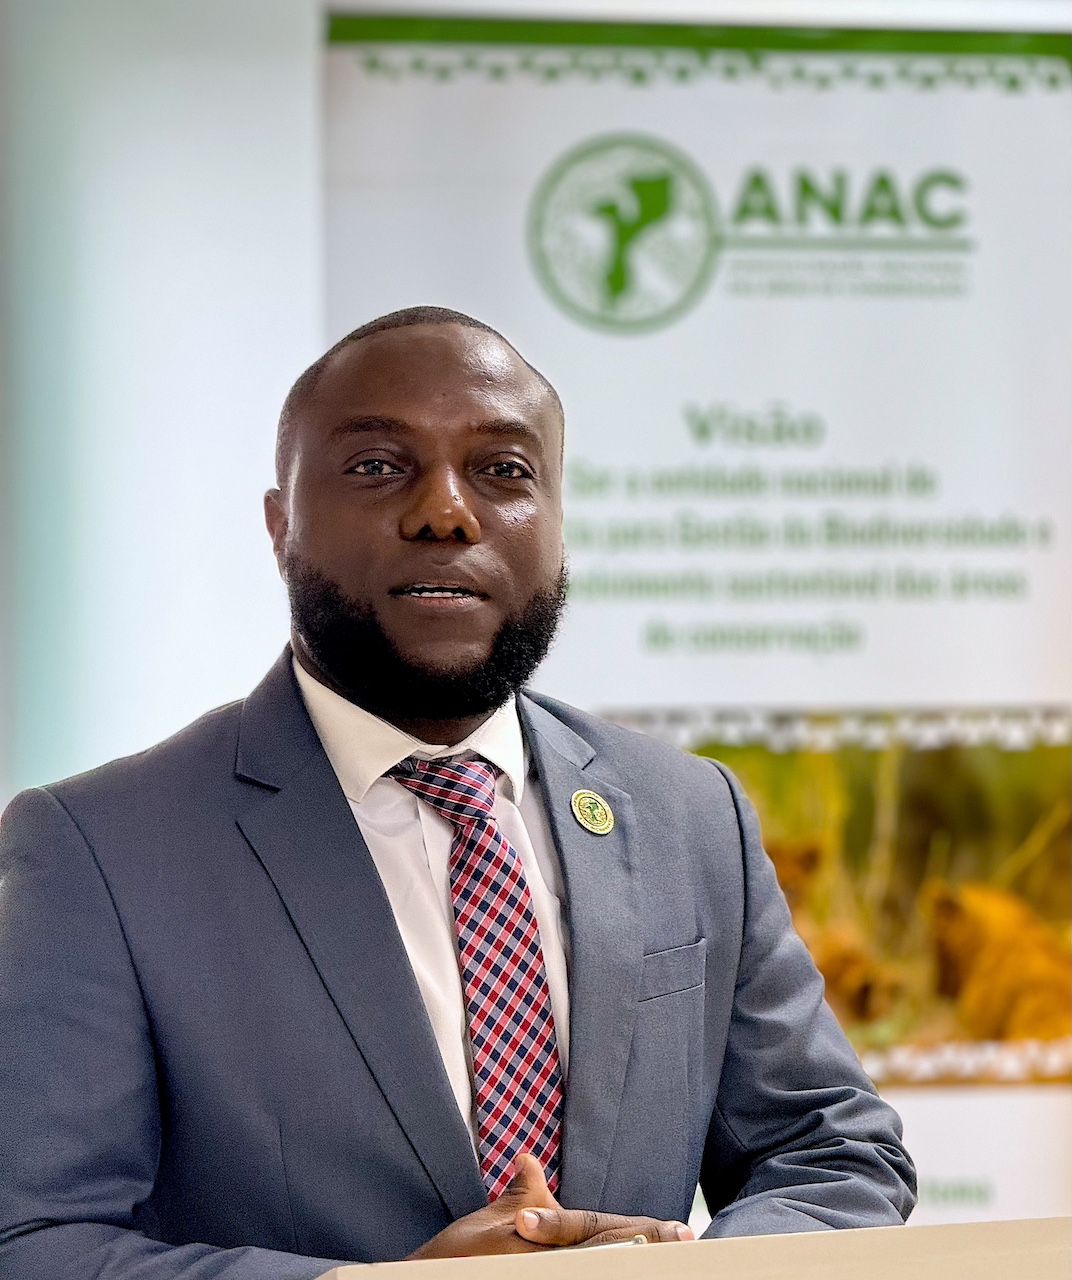 Director Geral da ANAC - Pejul Calenga